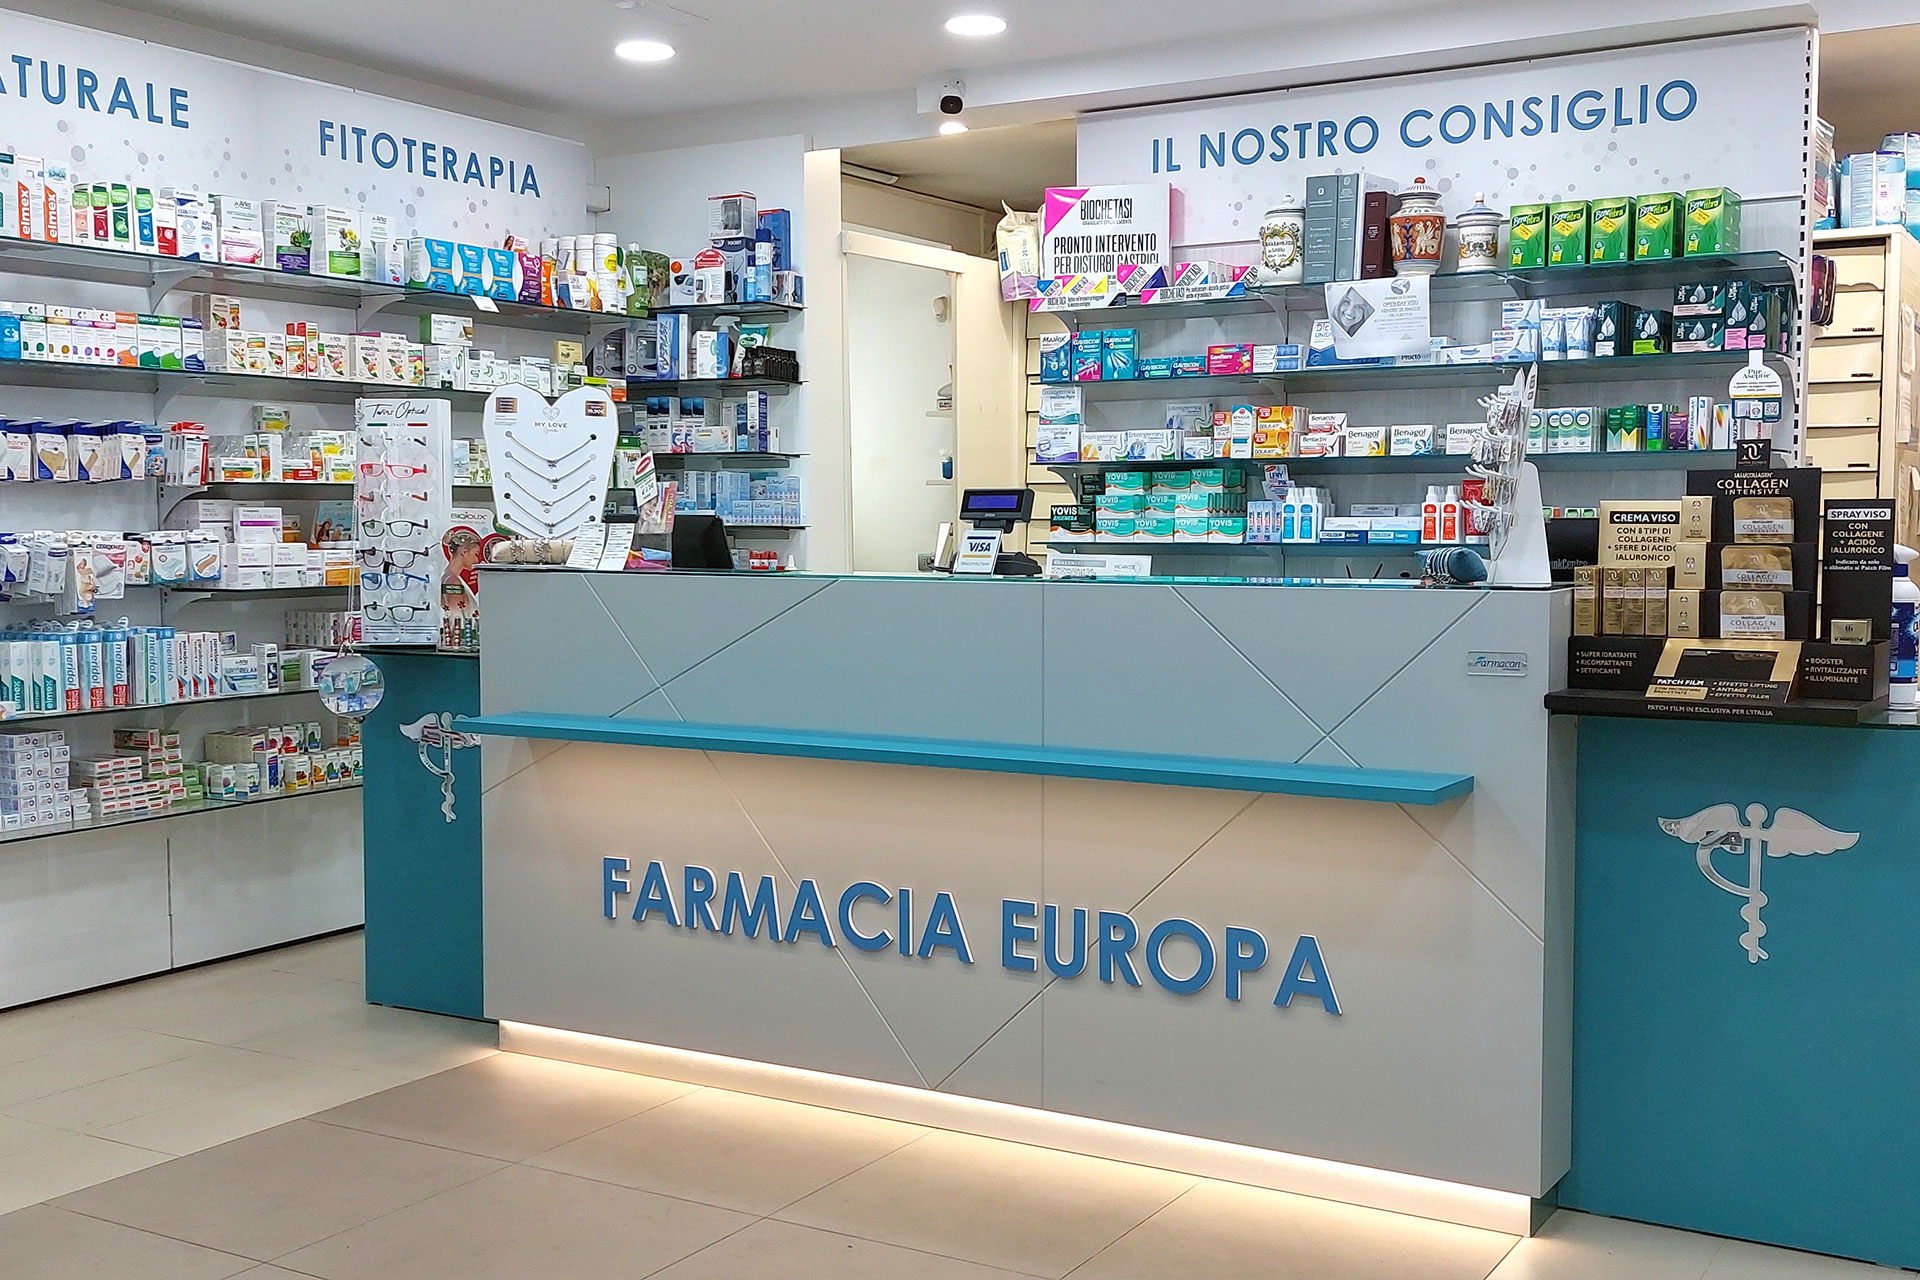 Farmacia Europa Dott.ri C. Raucci & F. Segreto - Napoli